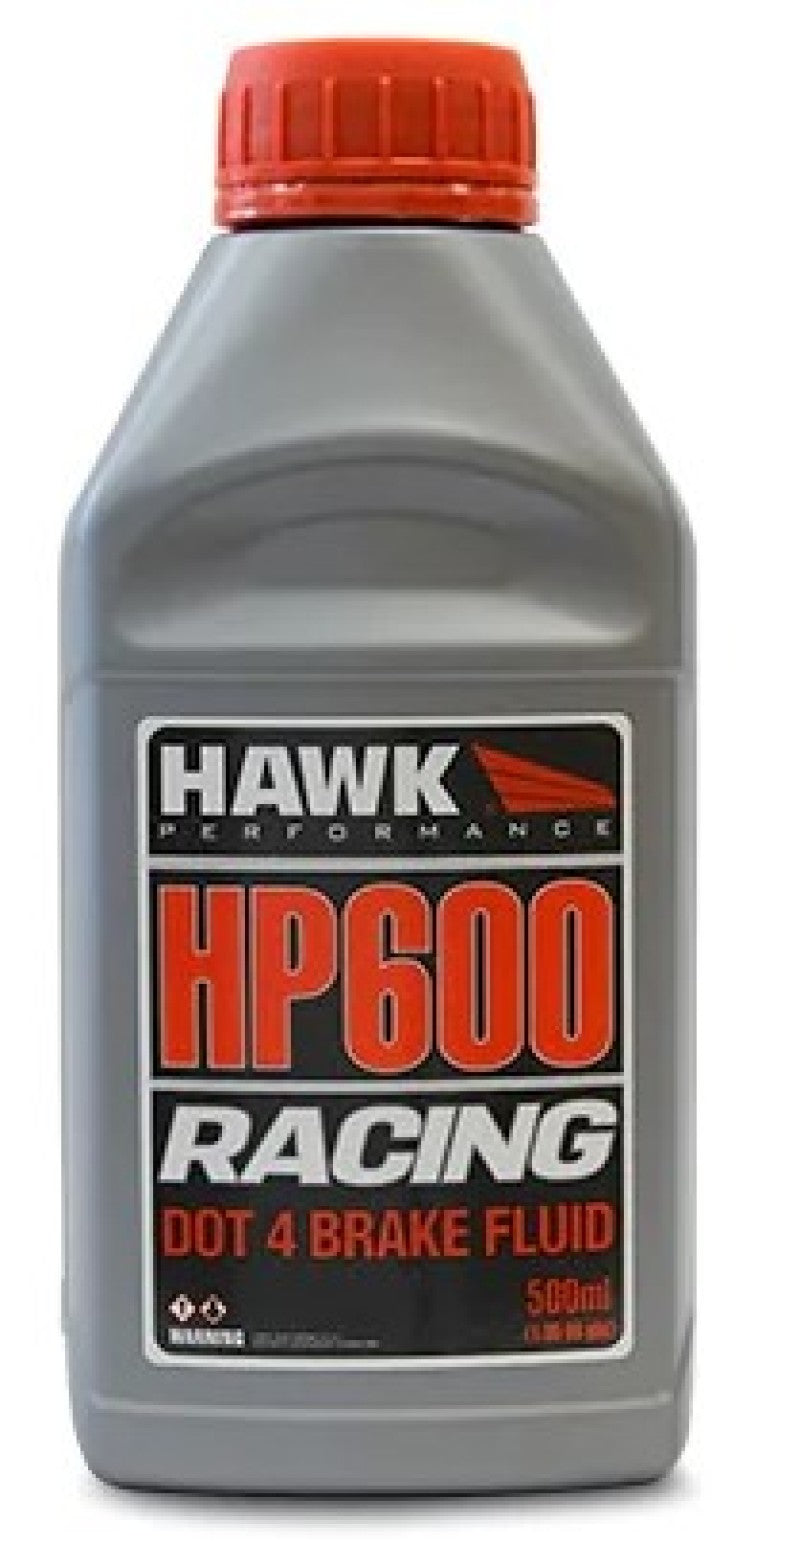 Hawk Performance Street DOT 4 Brake Fluid - 500ml Bottle.